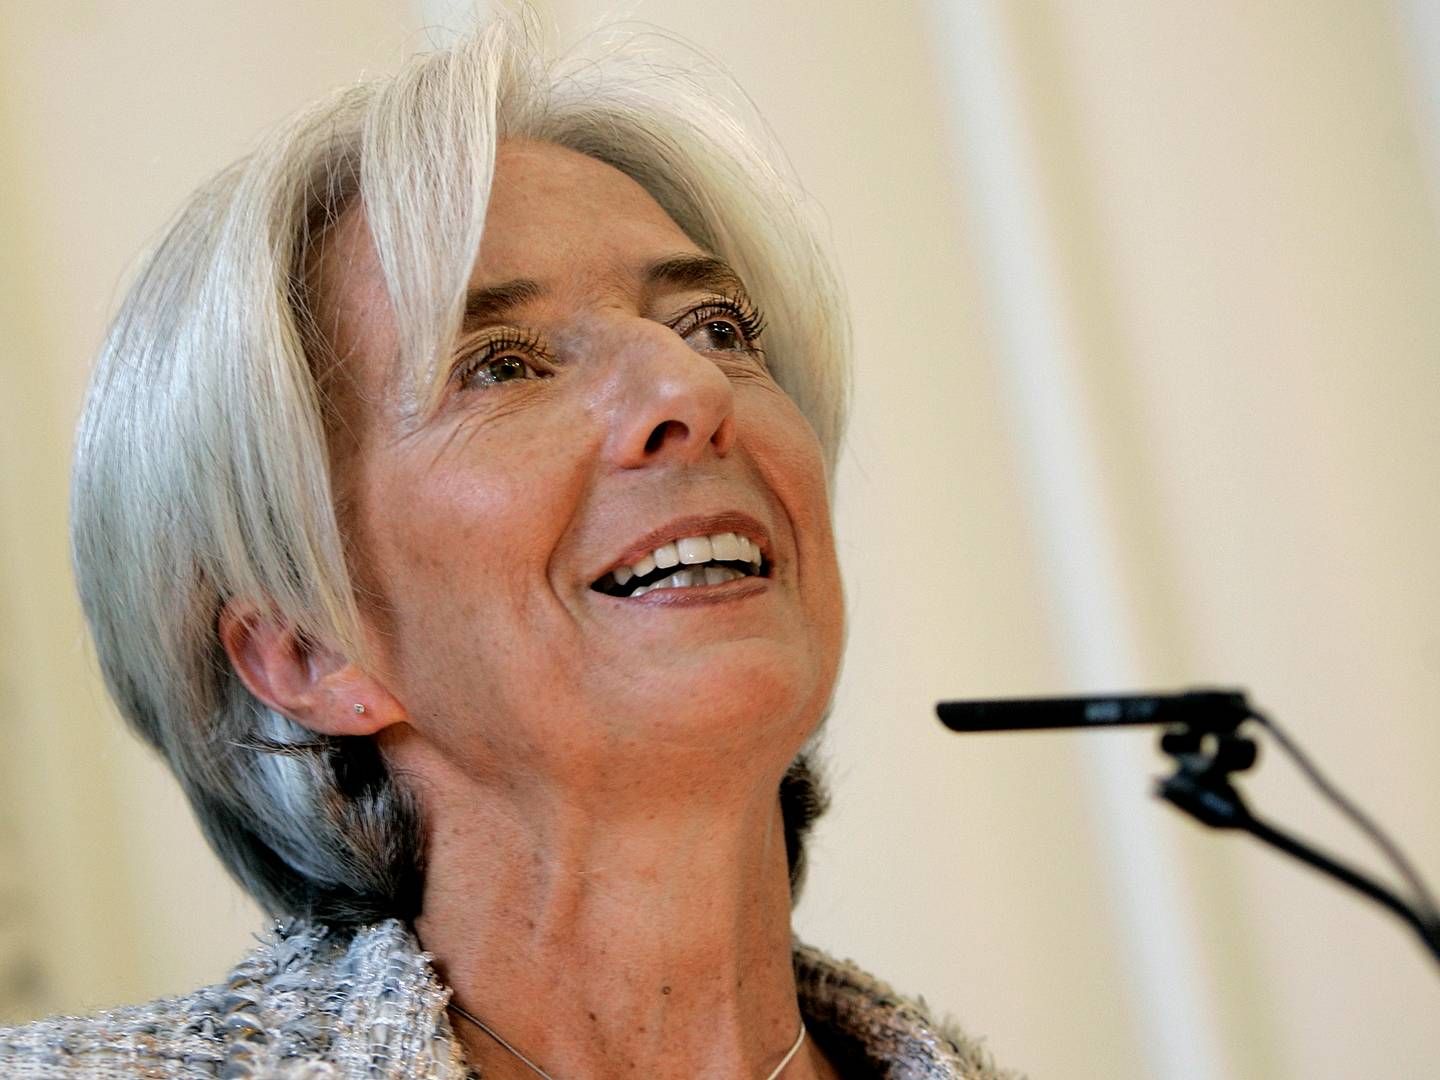 ECB-chef Christine Lagarde fastslog, at renten vil blive sat ned i år, men sagde ikke noget om hvornår. | Foto: Finn Frandsen